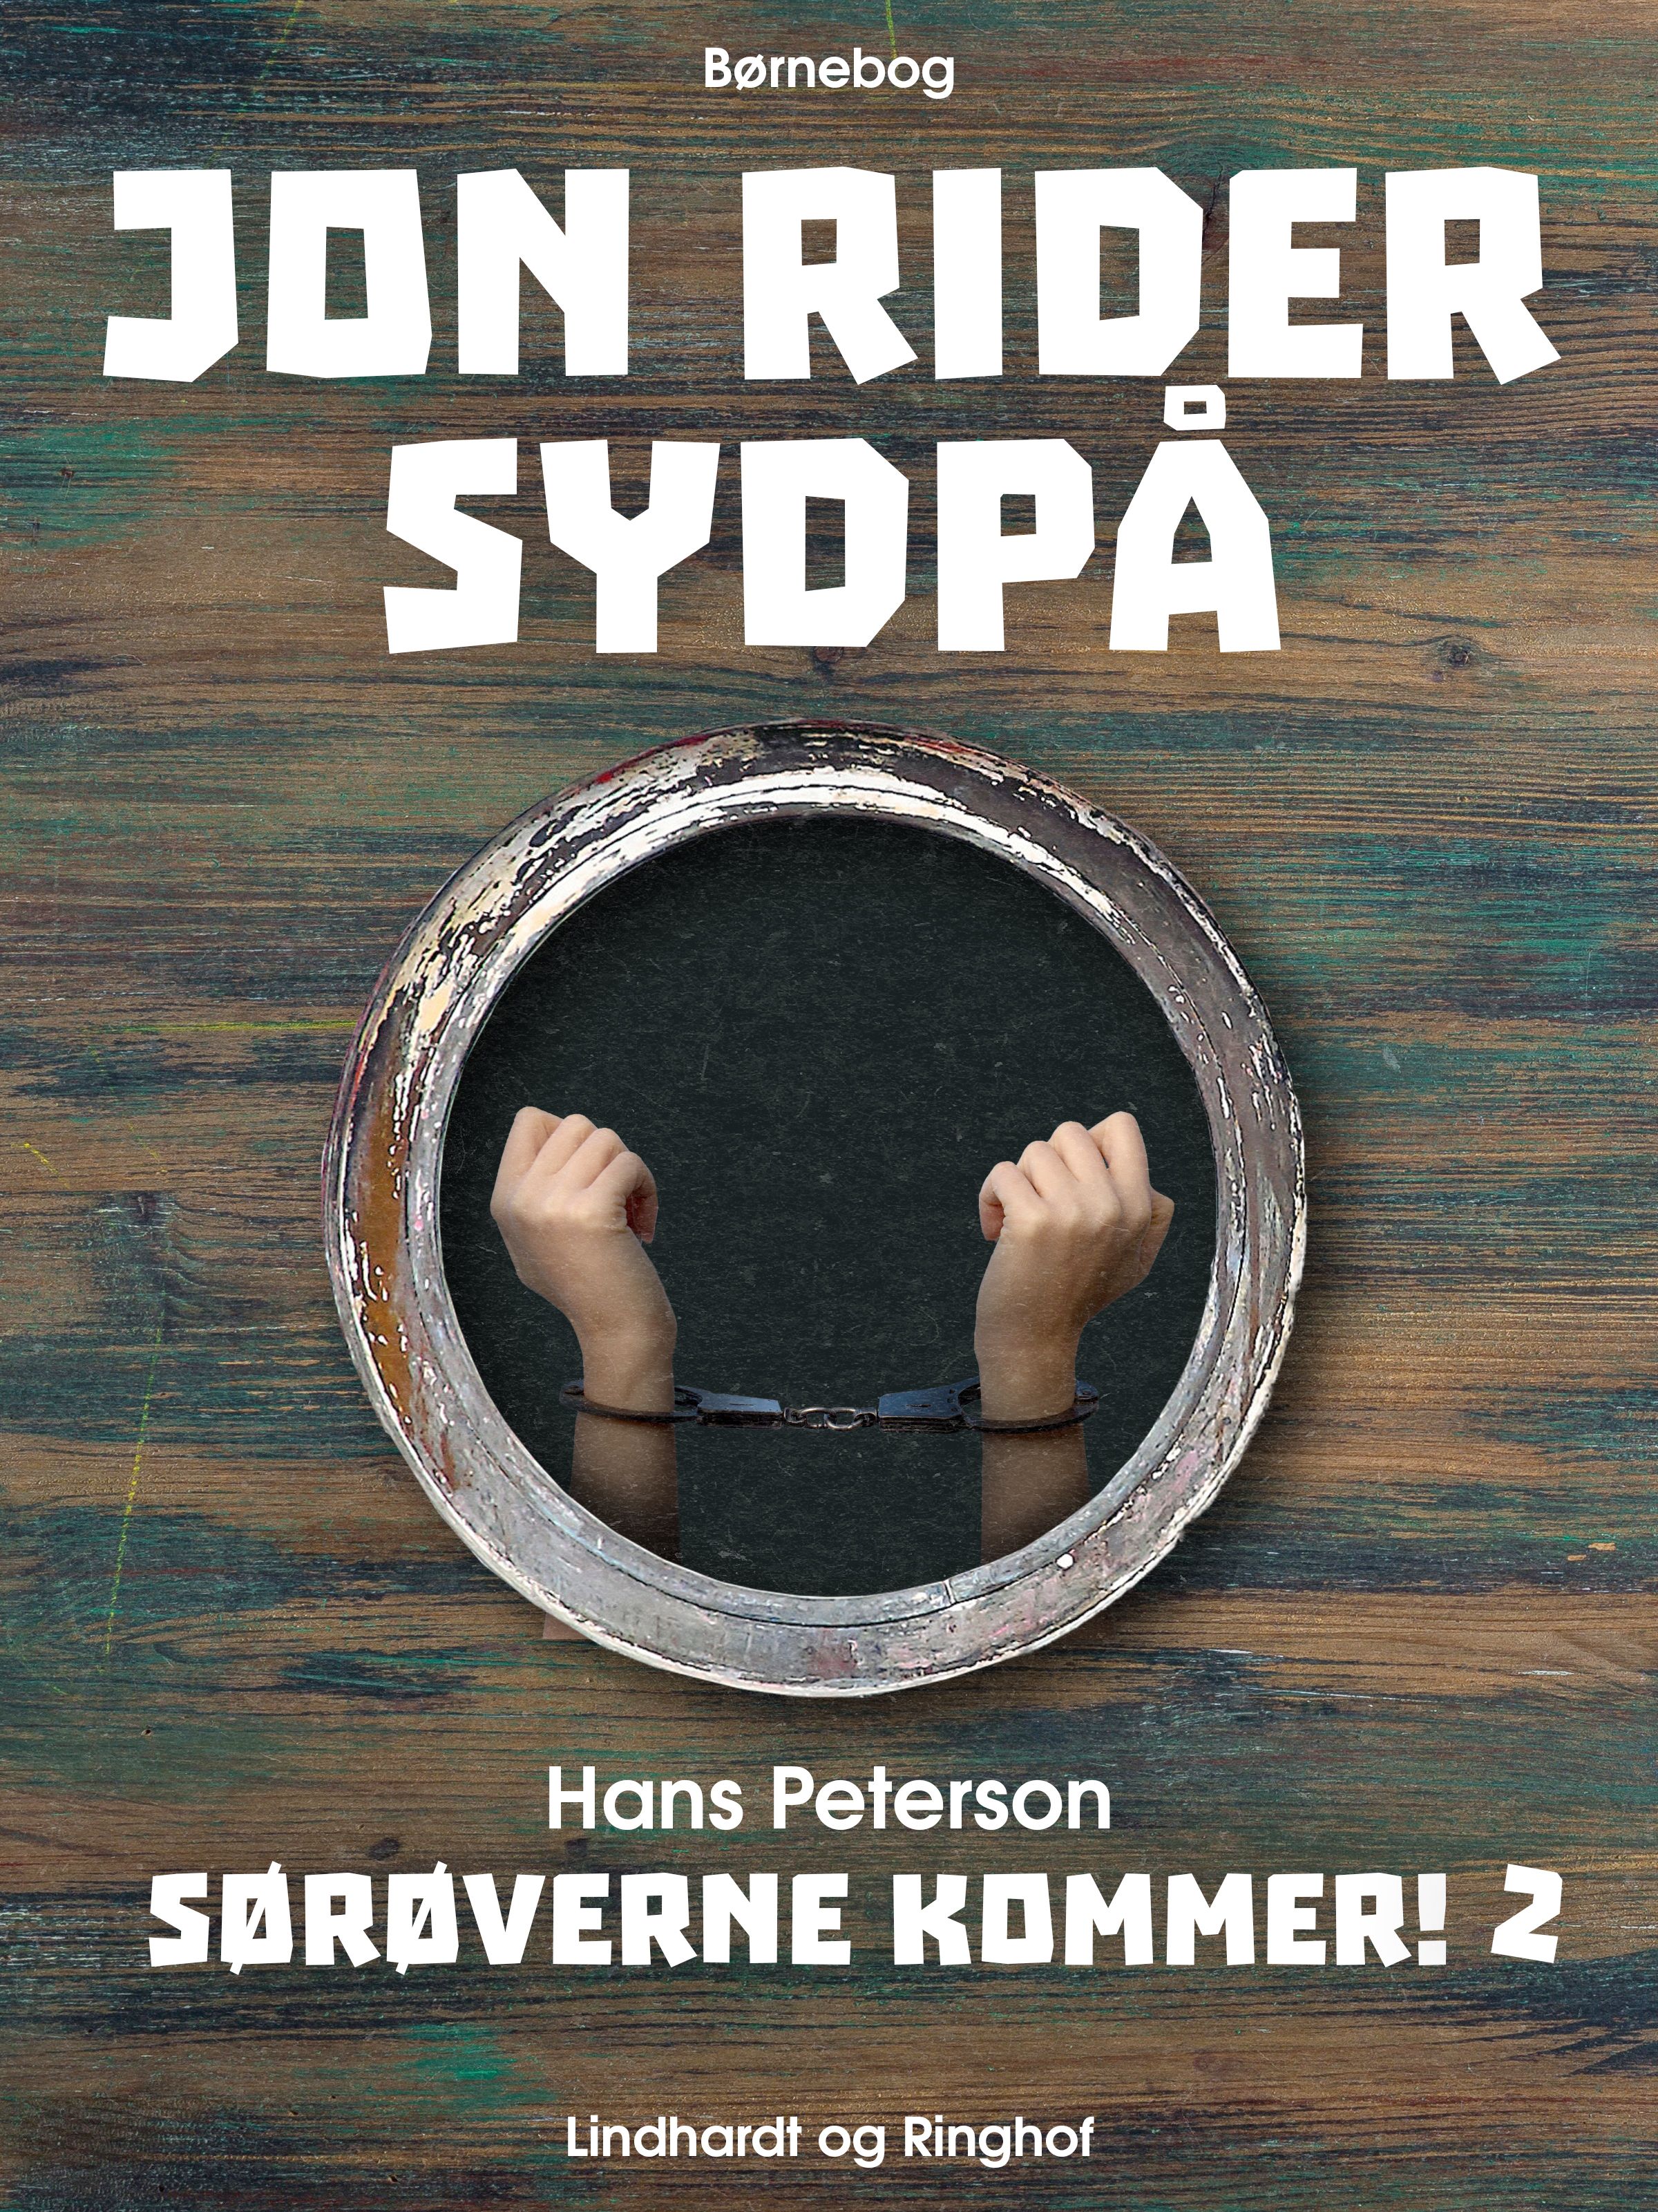 Jon rider sydpå, ljudbok av Hans Peterson